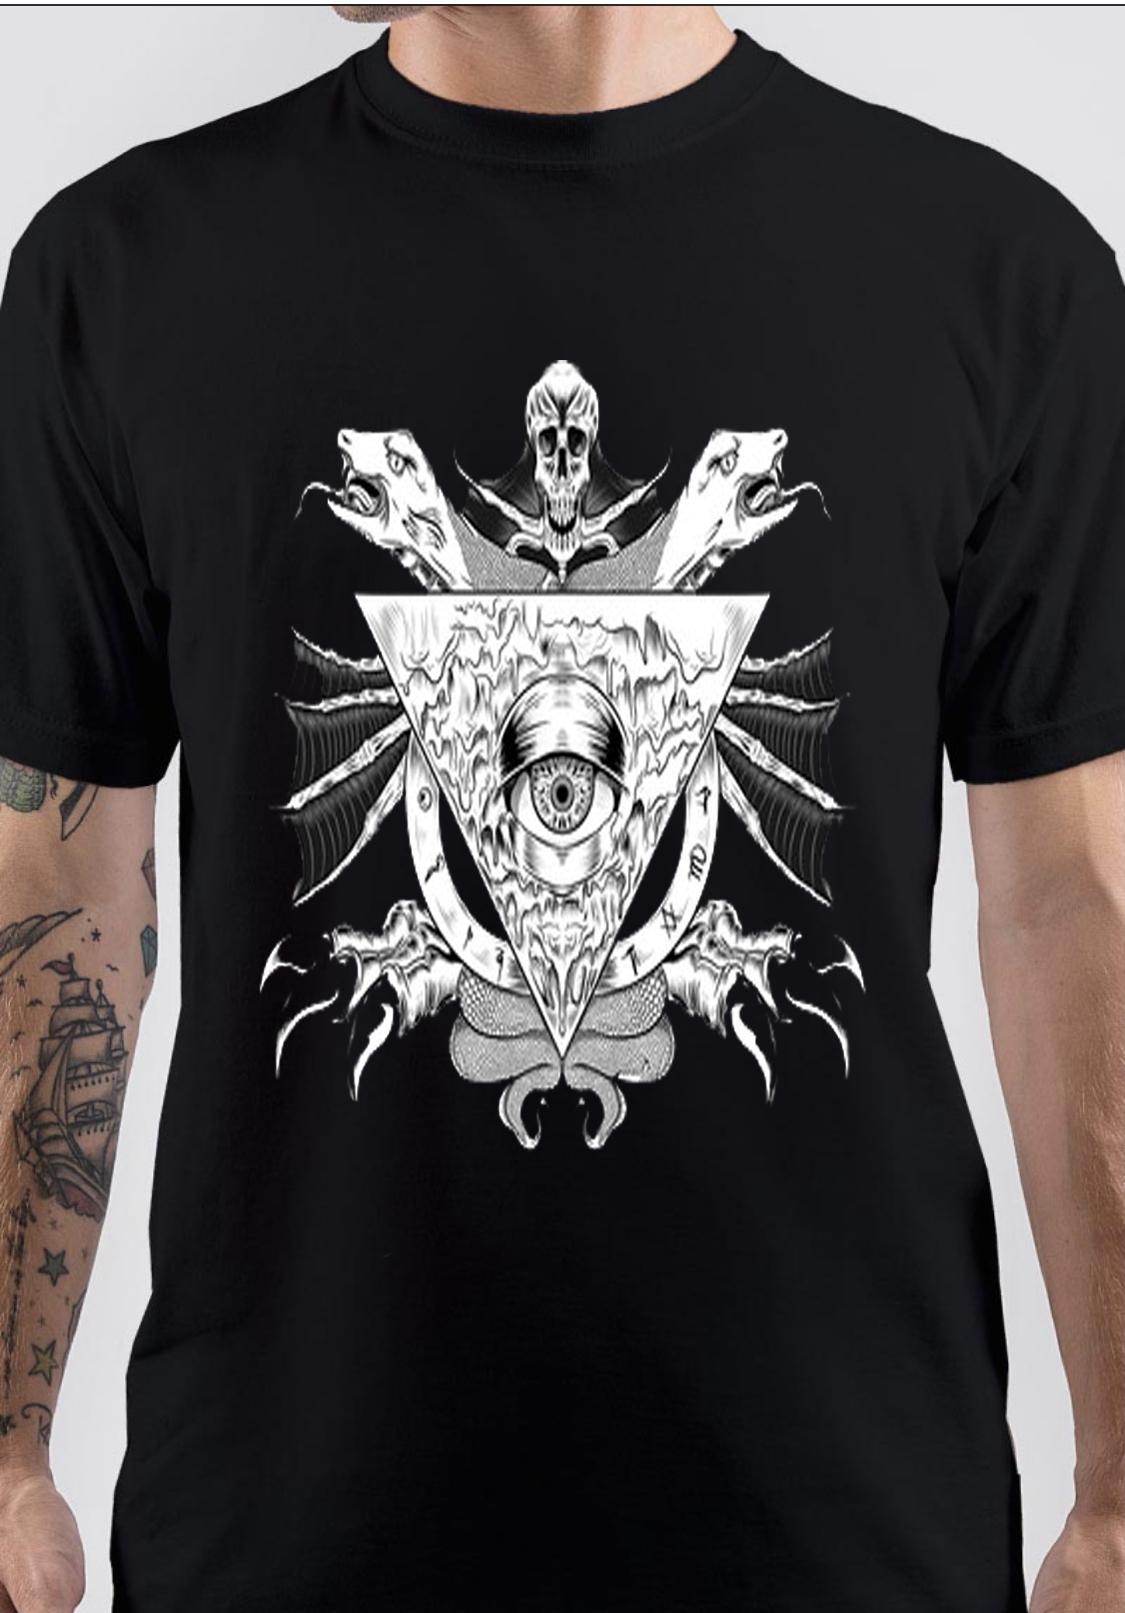 Illuminati T-Shirt And Merchandise